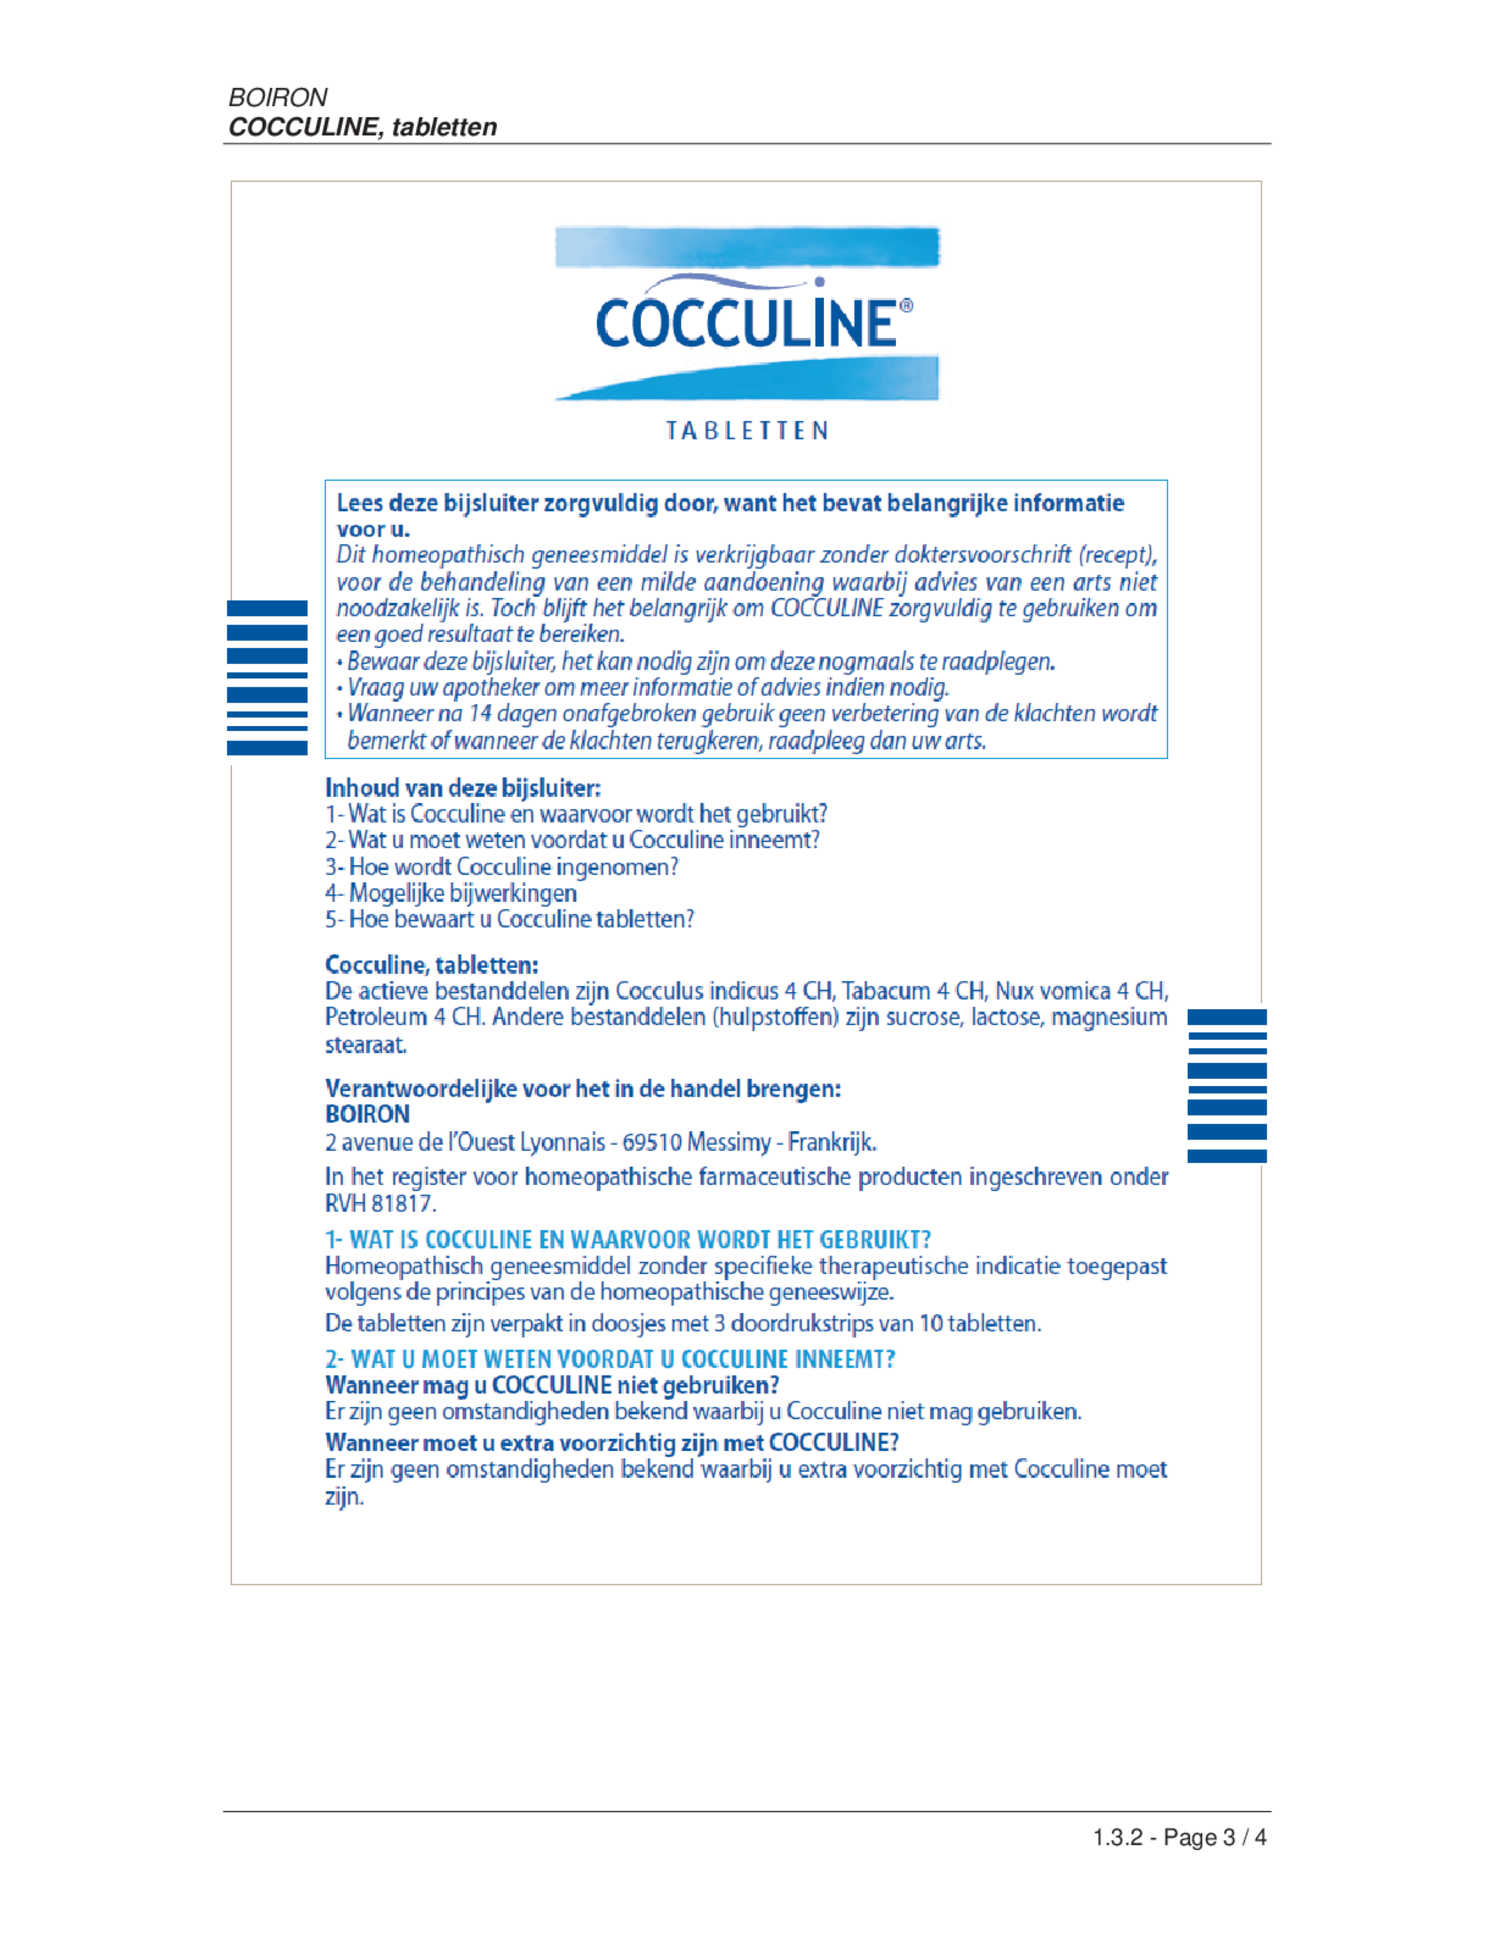 Cocculine Tabletten afbeelding van document #1, bijsluiter